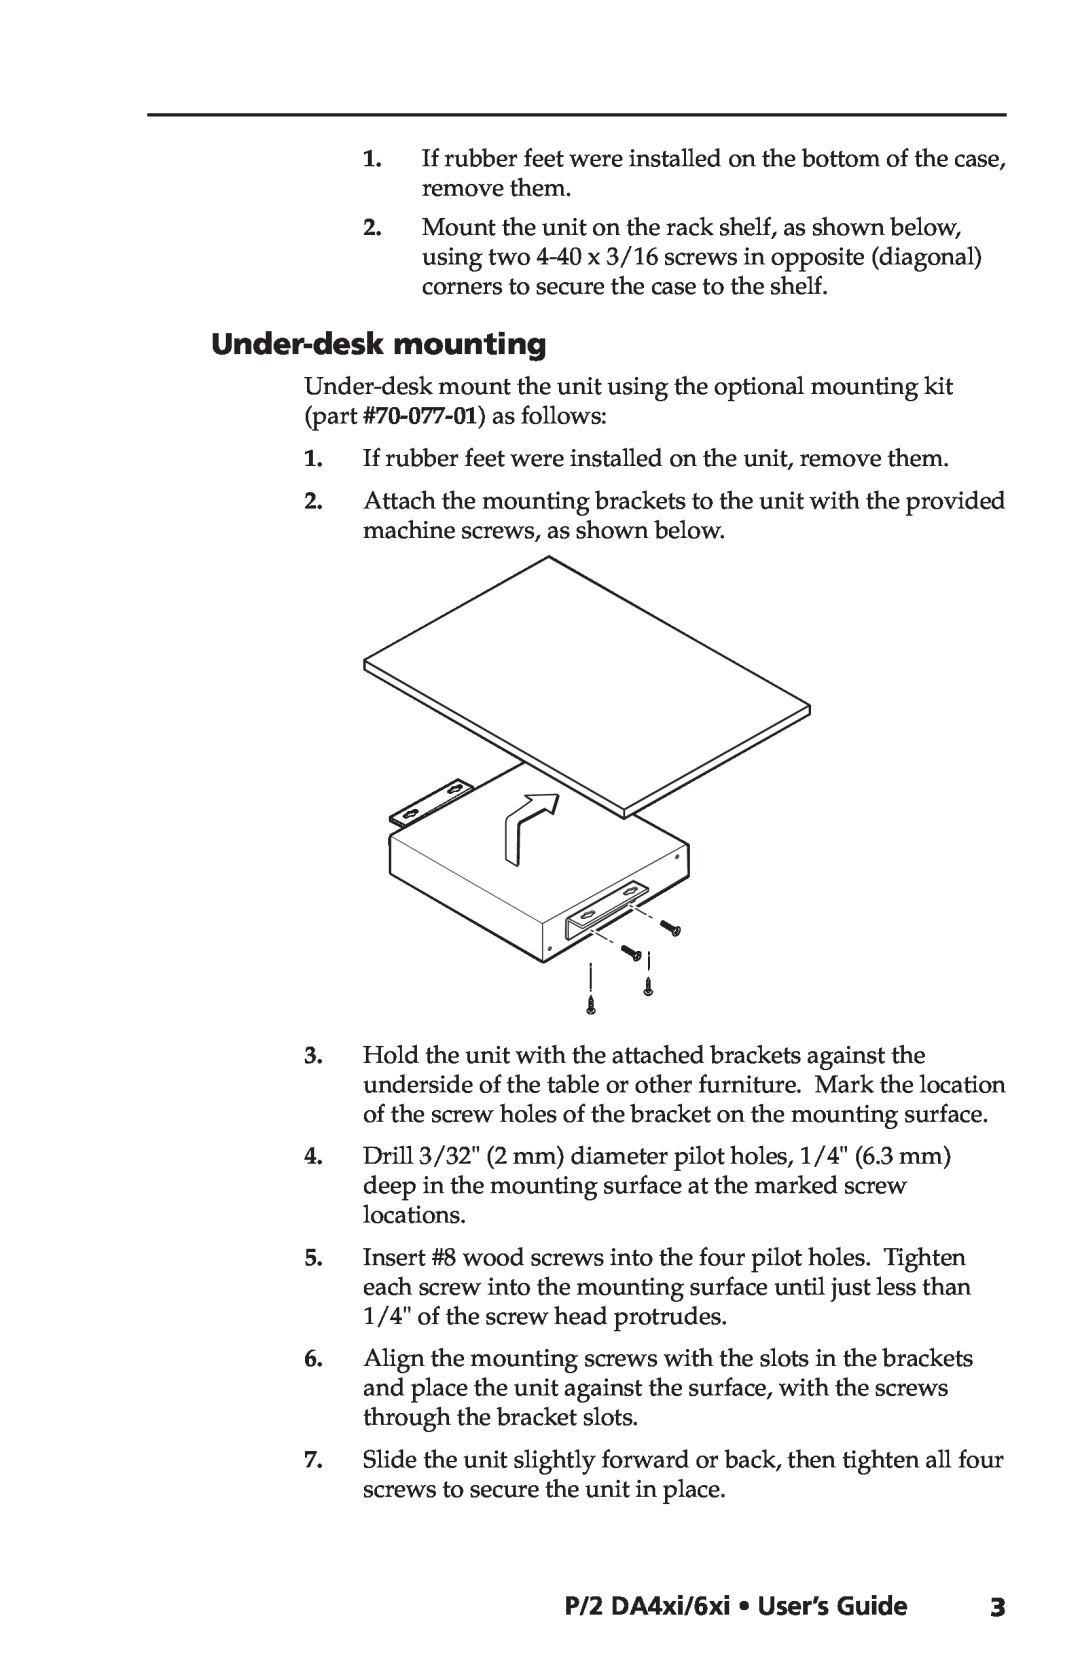 Extron electronic P/2 DA6XI, P/2 DA4XI manual Under-deskmounting, P/2 DA4xi/6xi User’s Guide 